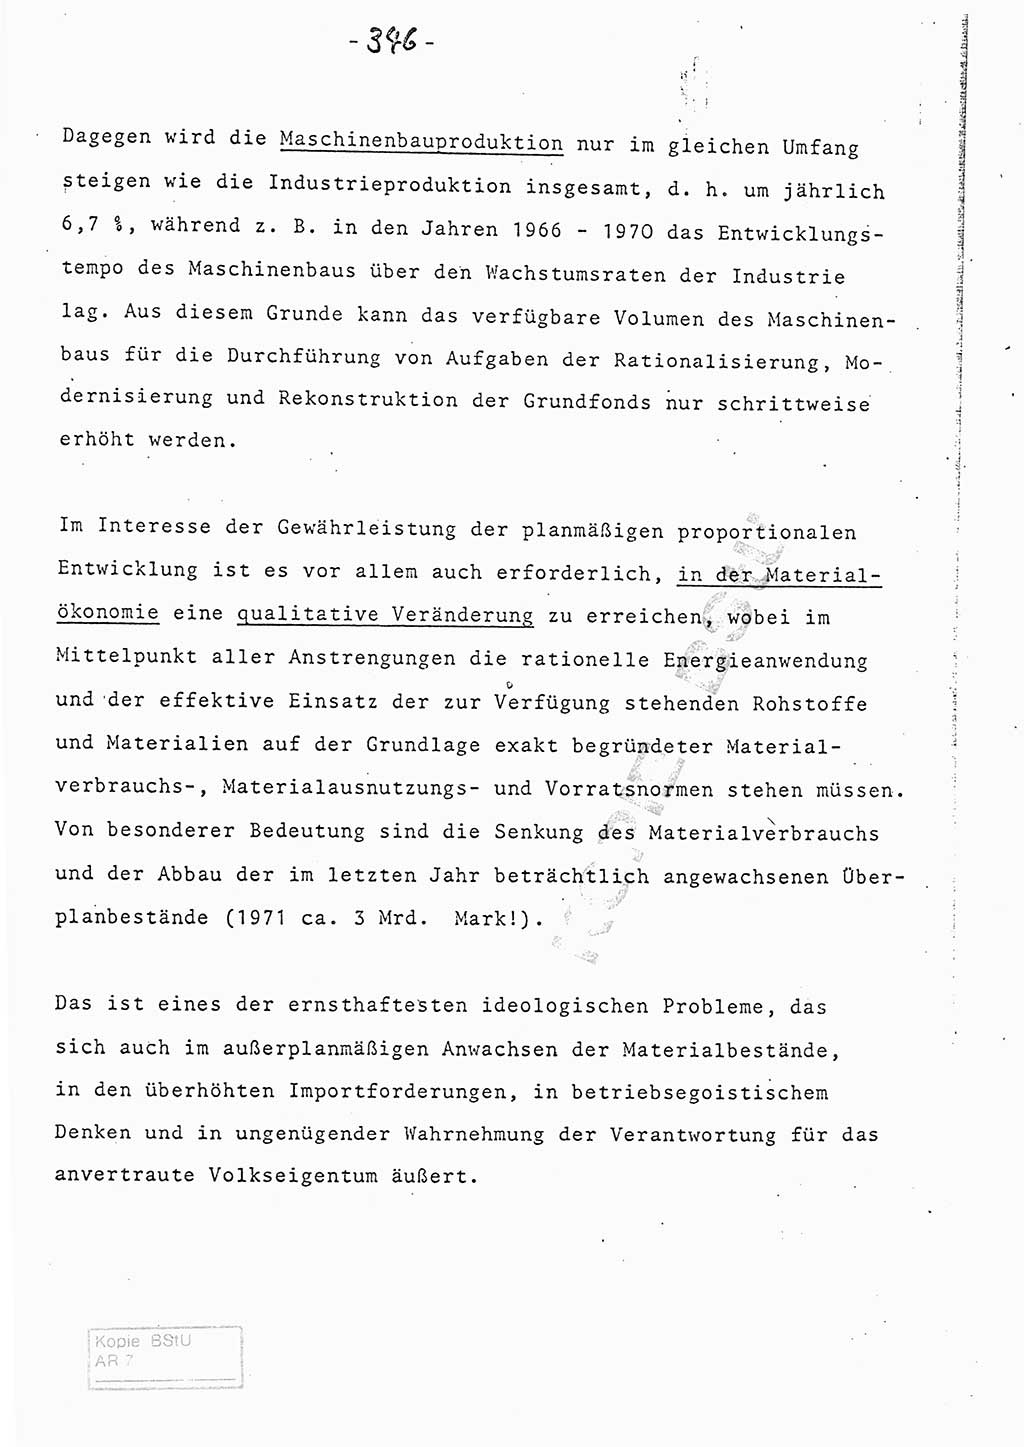 Referat (Entwurf) des Genossen Minister (Generaloberst Erich Mielke) auf der Dienstkonferenz 1972, Ministerium für Staatssicherheit (MfS) [Deutsche Demokratische Republik (DDR)], Der Minister, Geheime Verschlußsache (GVS) 008-150/72, Berlin 25.2.1972, Seite 346 (Ref. Entw. DK MfS DDR Min. GVS 008-150/72 1972, S. 346)